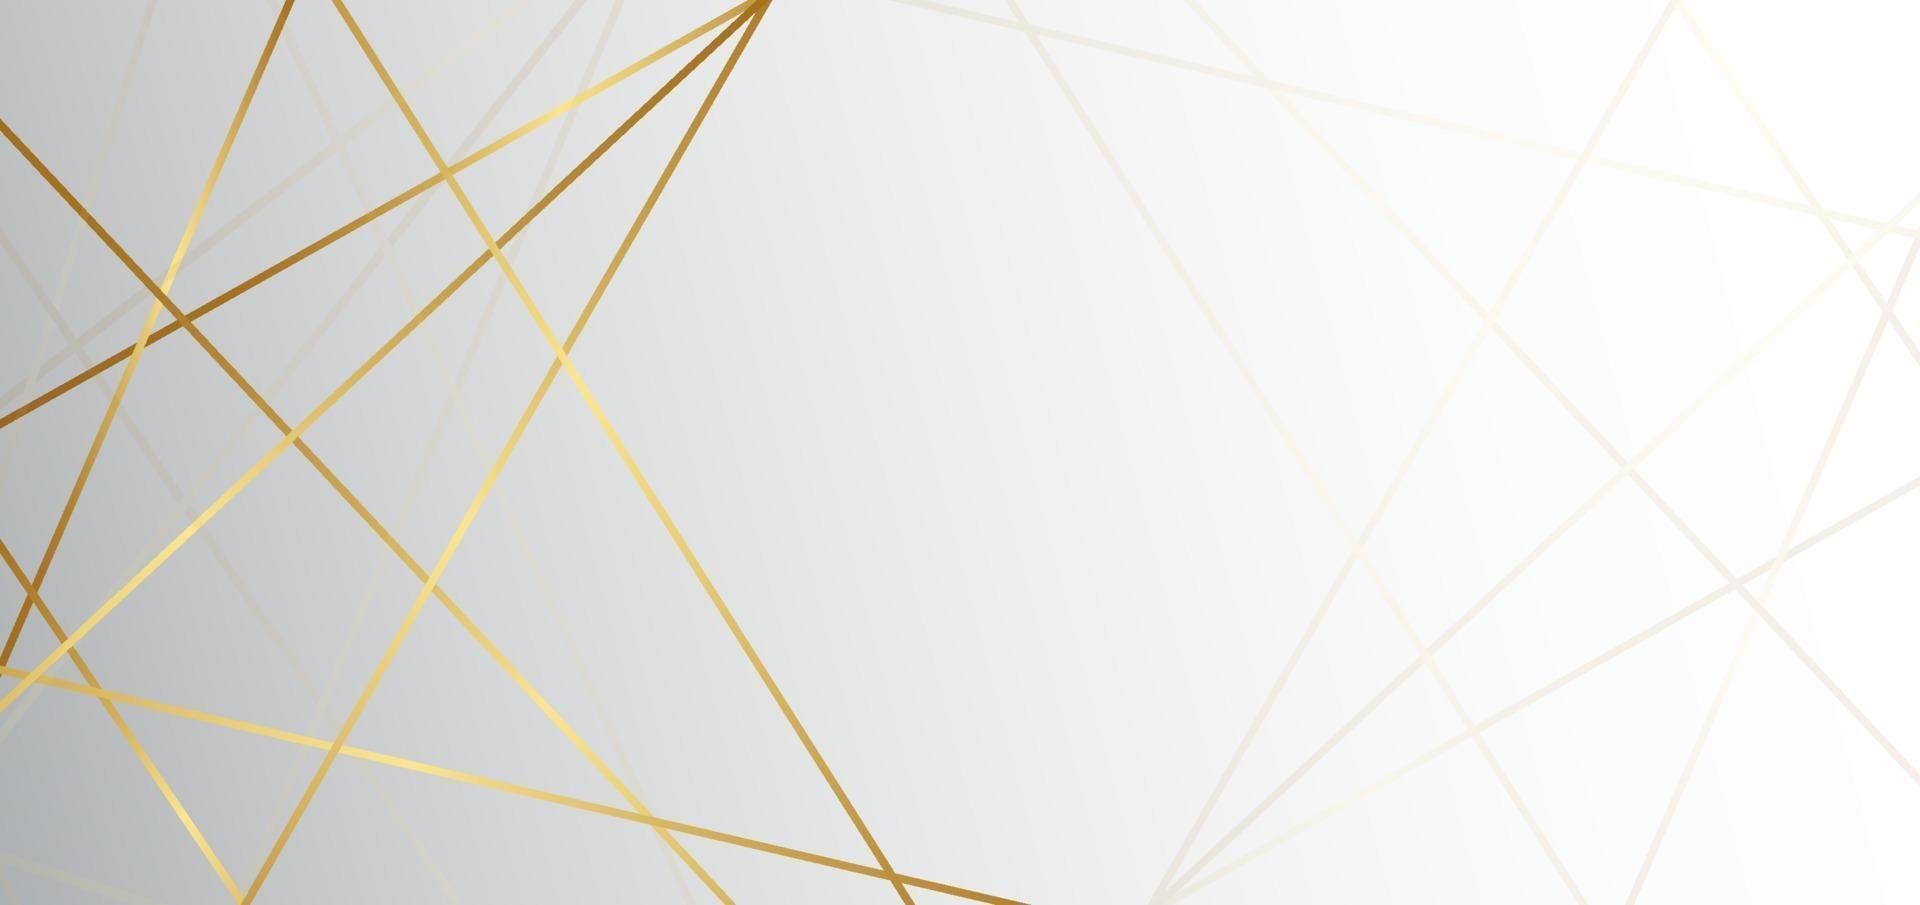 abstracte witte en grijze driehoeksachtergrond met gouden lijnluxe. u kunt gebruiken voor advertentie, poster, sjabloon, bedrijfspresentatie. vector